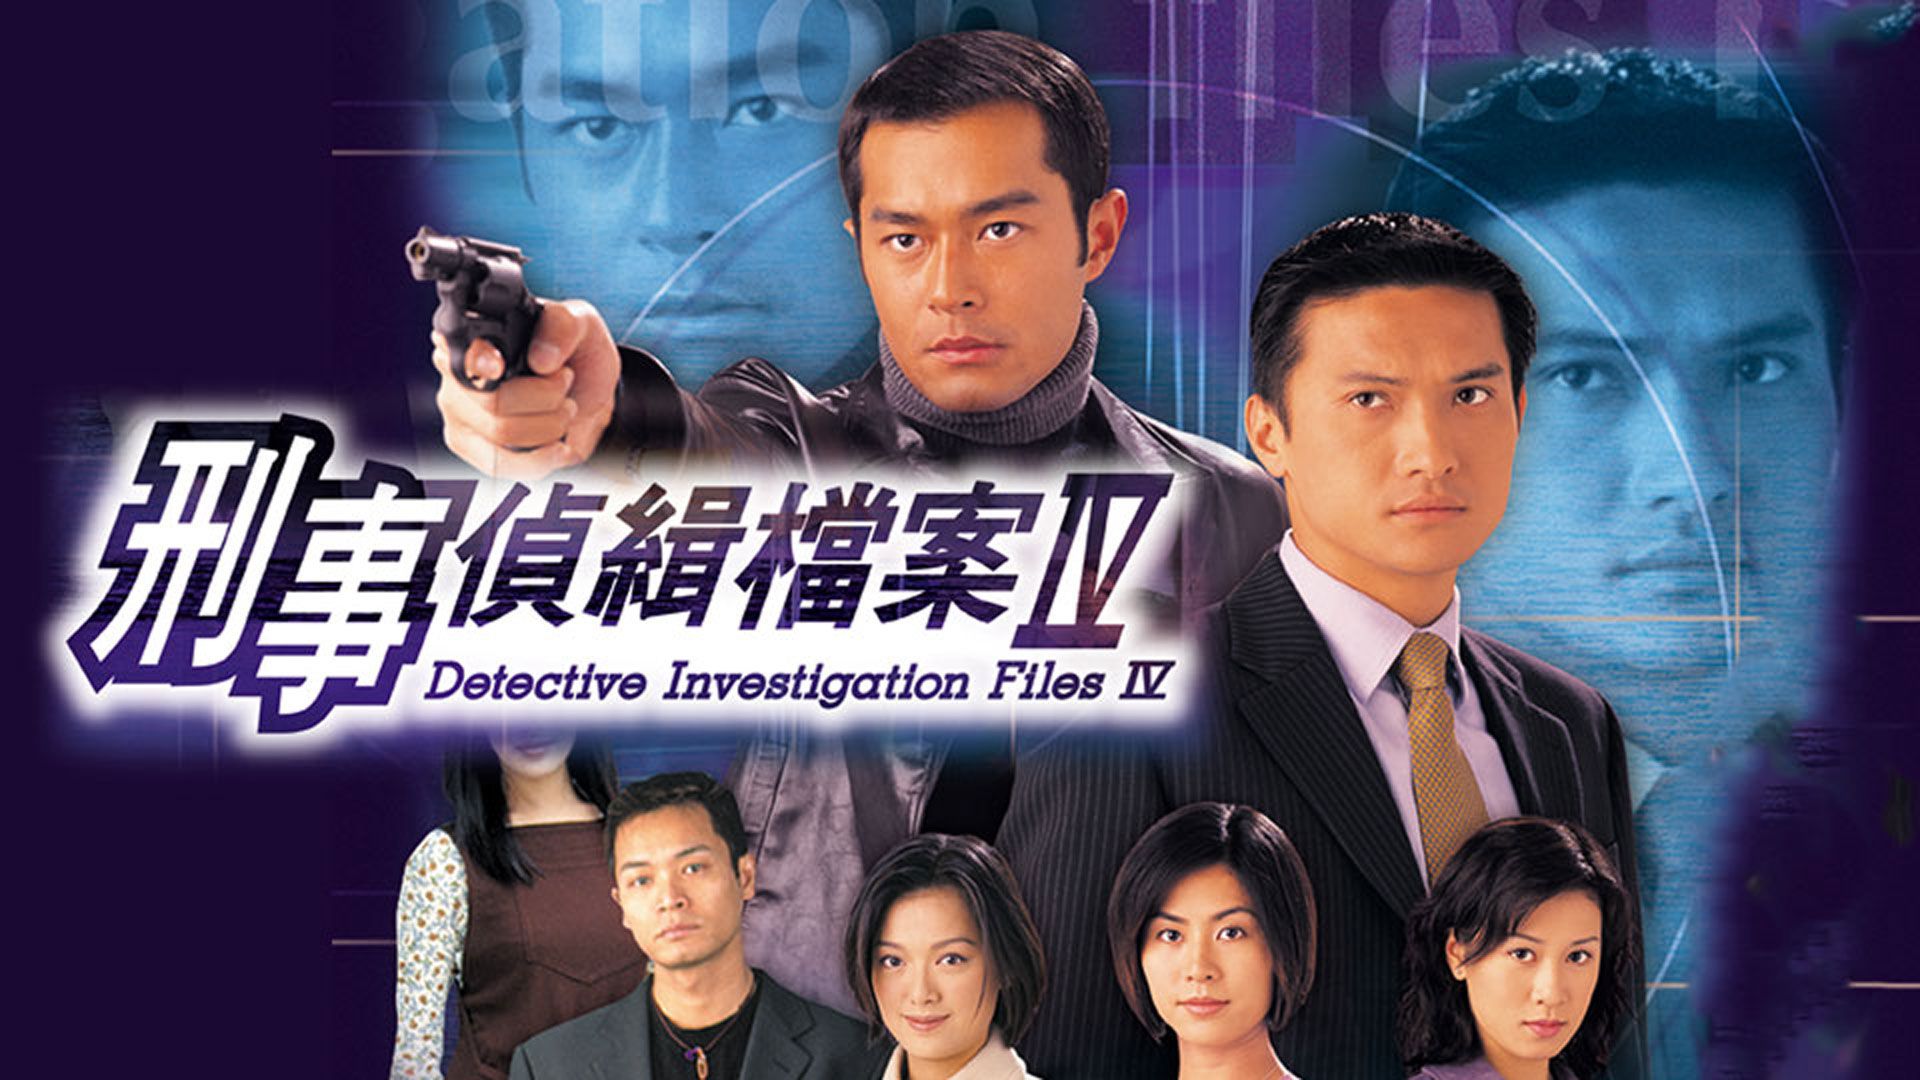 刑事偵緝檔案IV-Detective Investigation Files IV